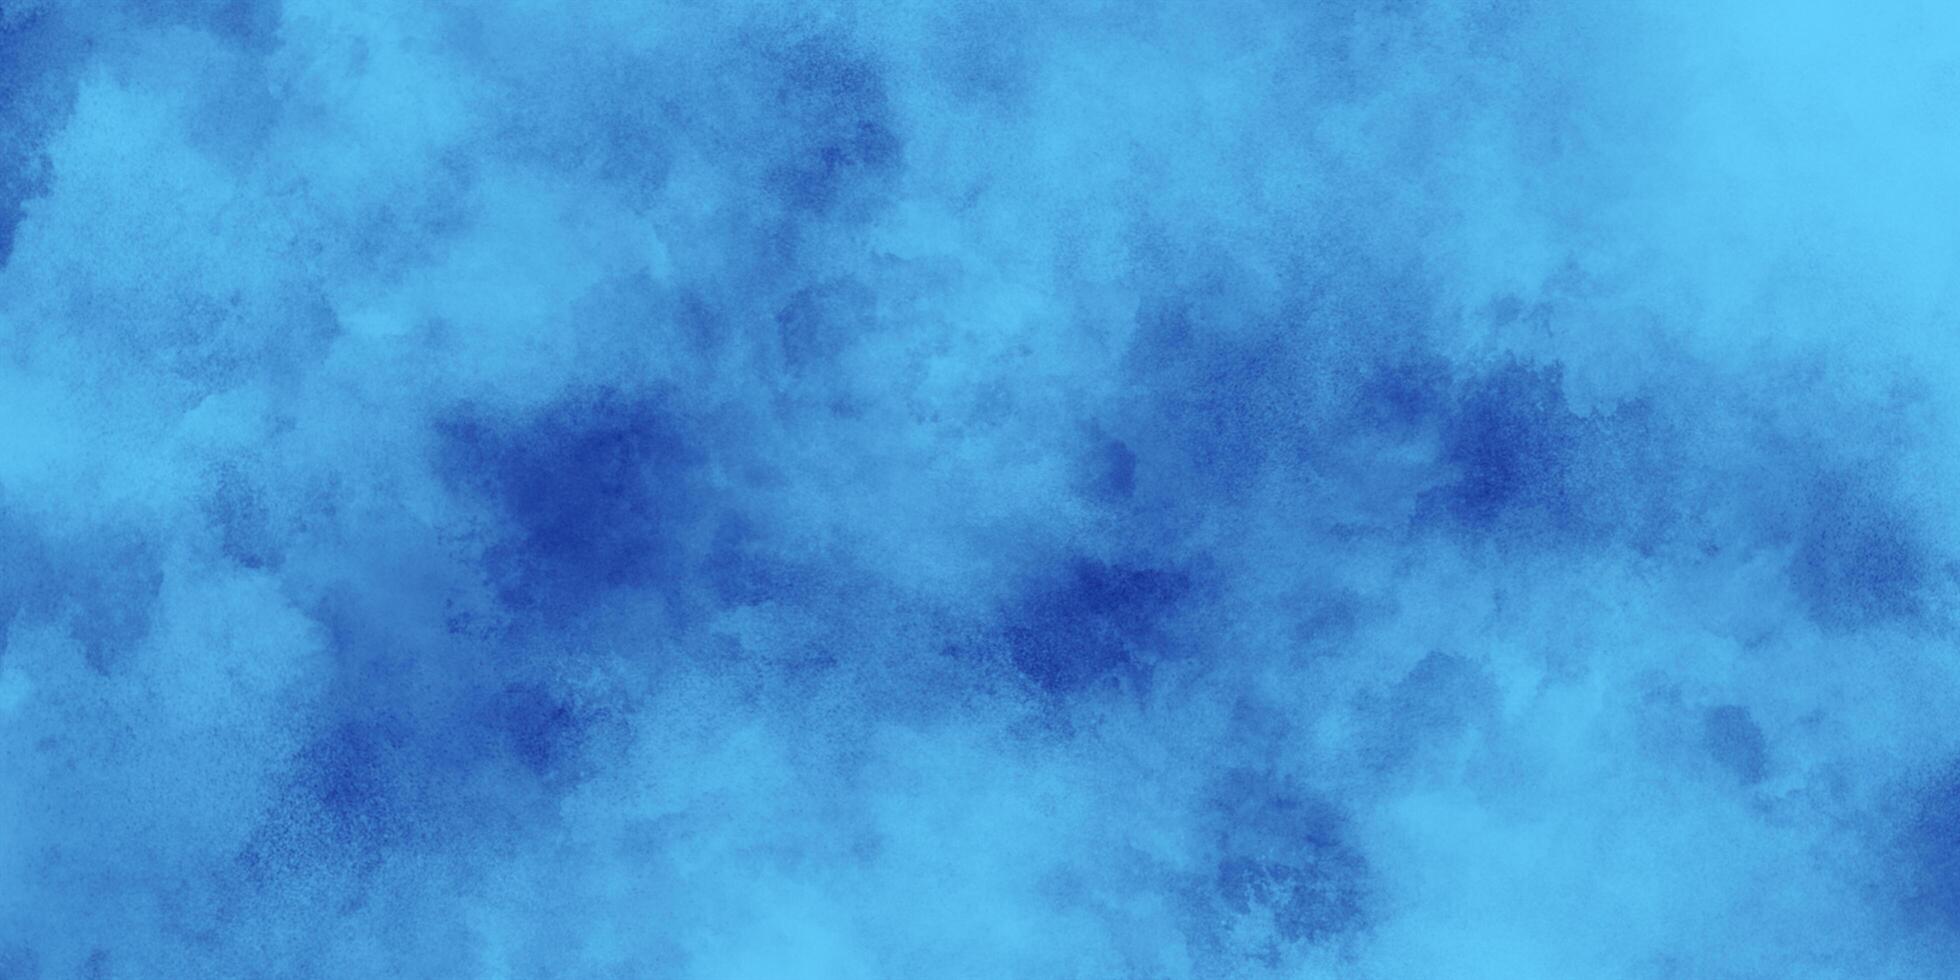 abstract lucht blauw waterverf achtergrond met verf, penseel geschilderd blauw waterverf achtergrond met waterverf spatten en vlekken voor decoratie en ontwerp. foto